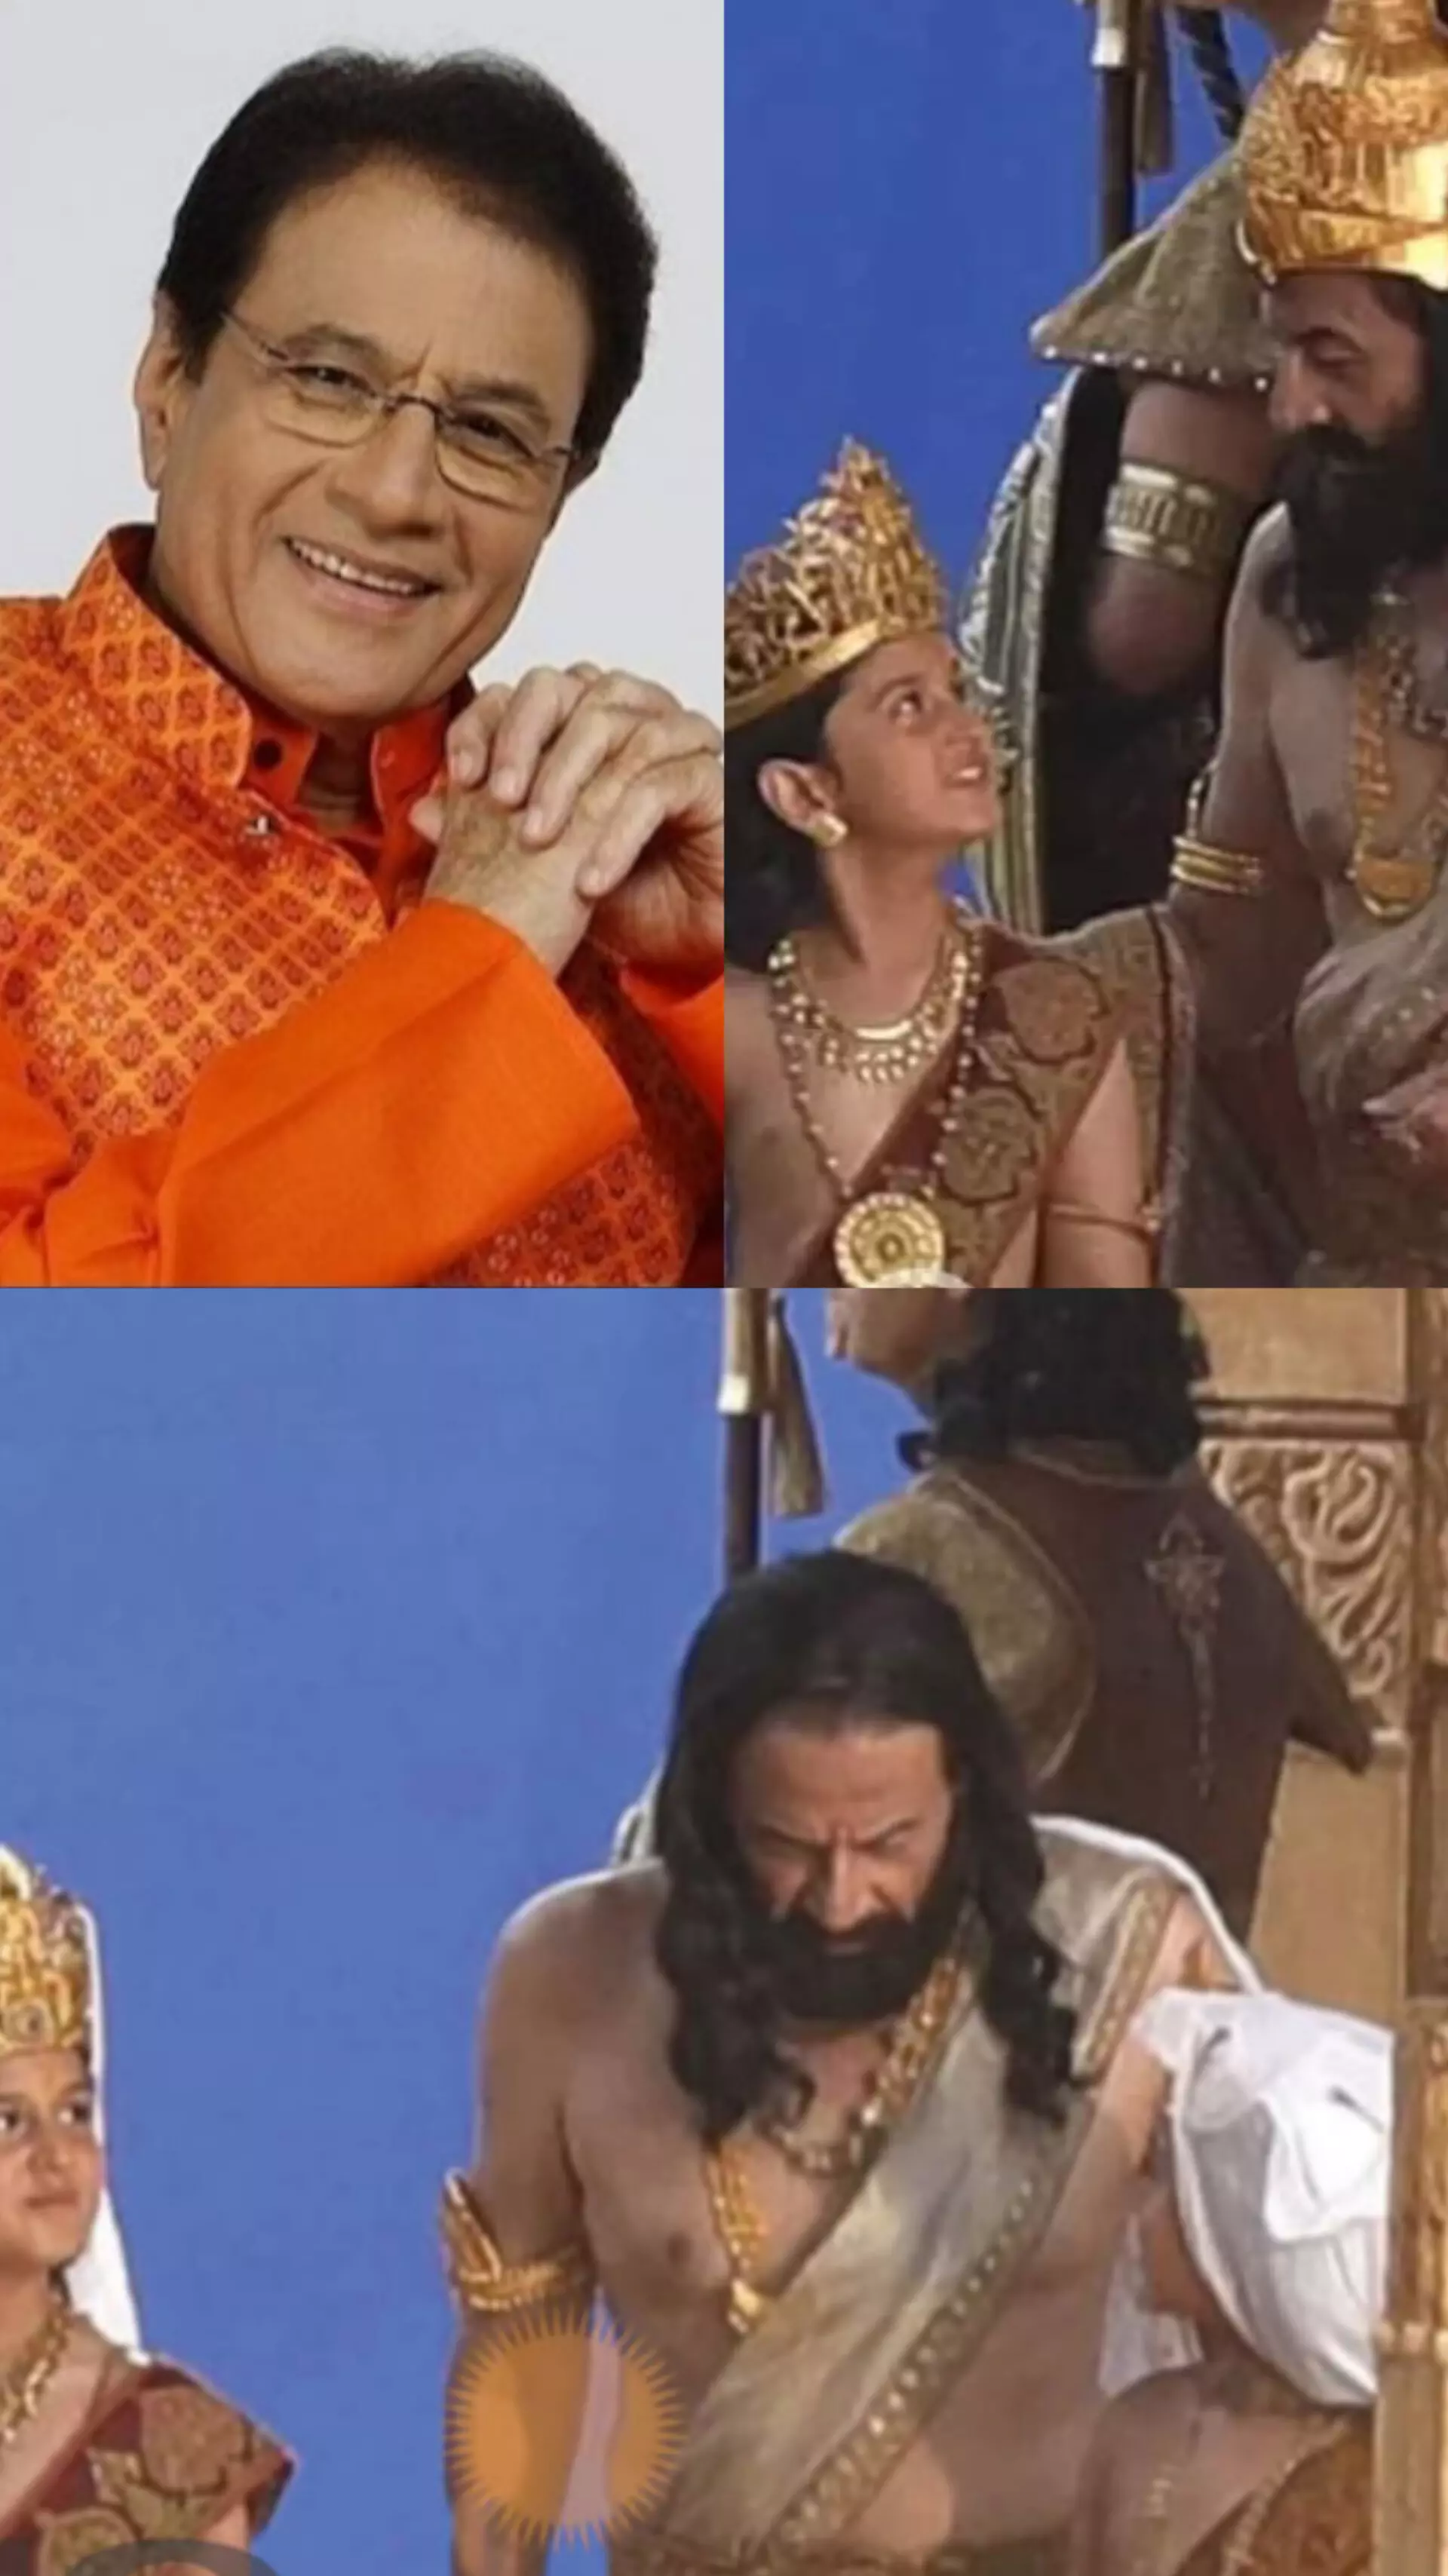 निर्देशक नितेश तिवारी की महाकाव्य फिल्म रामायण की शूटिंग शुरू, अरुण गोविल निभाएंगे राजा दशरथ का किरदार